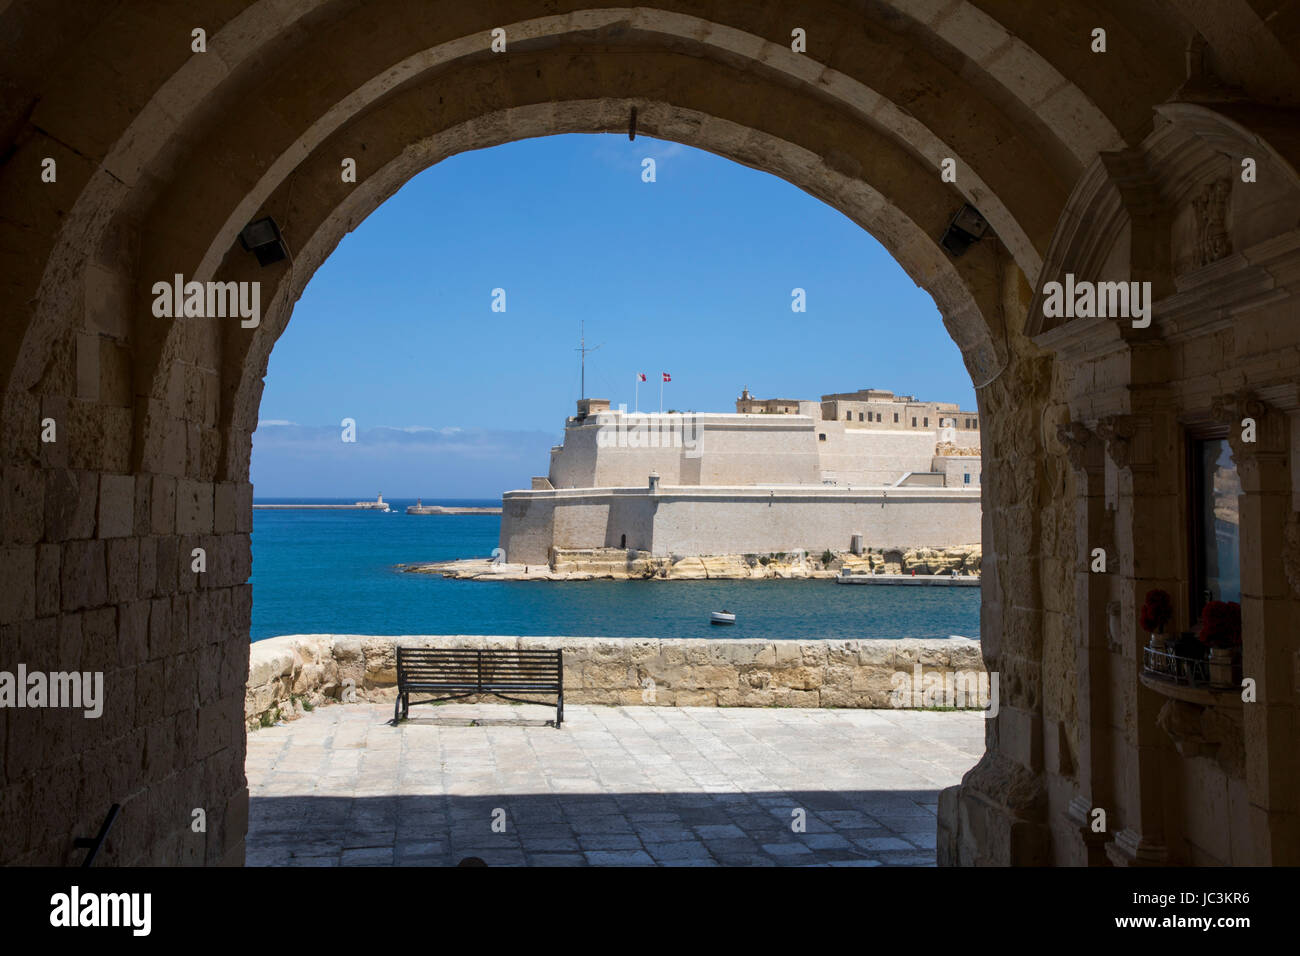 Malta, Grand Harbour, Vedette, Aussichtspunkt auf den Festungsmauern Senglea, Blick von Fort St. Angelo, Stockfoto